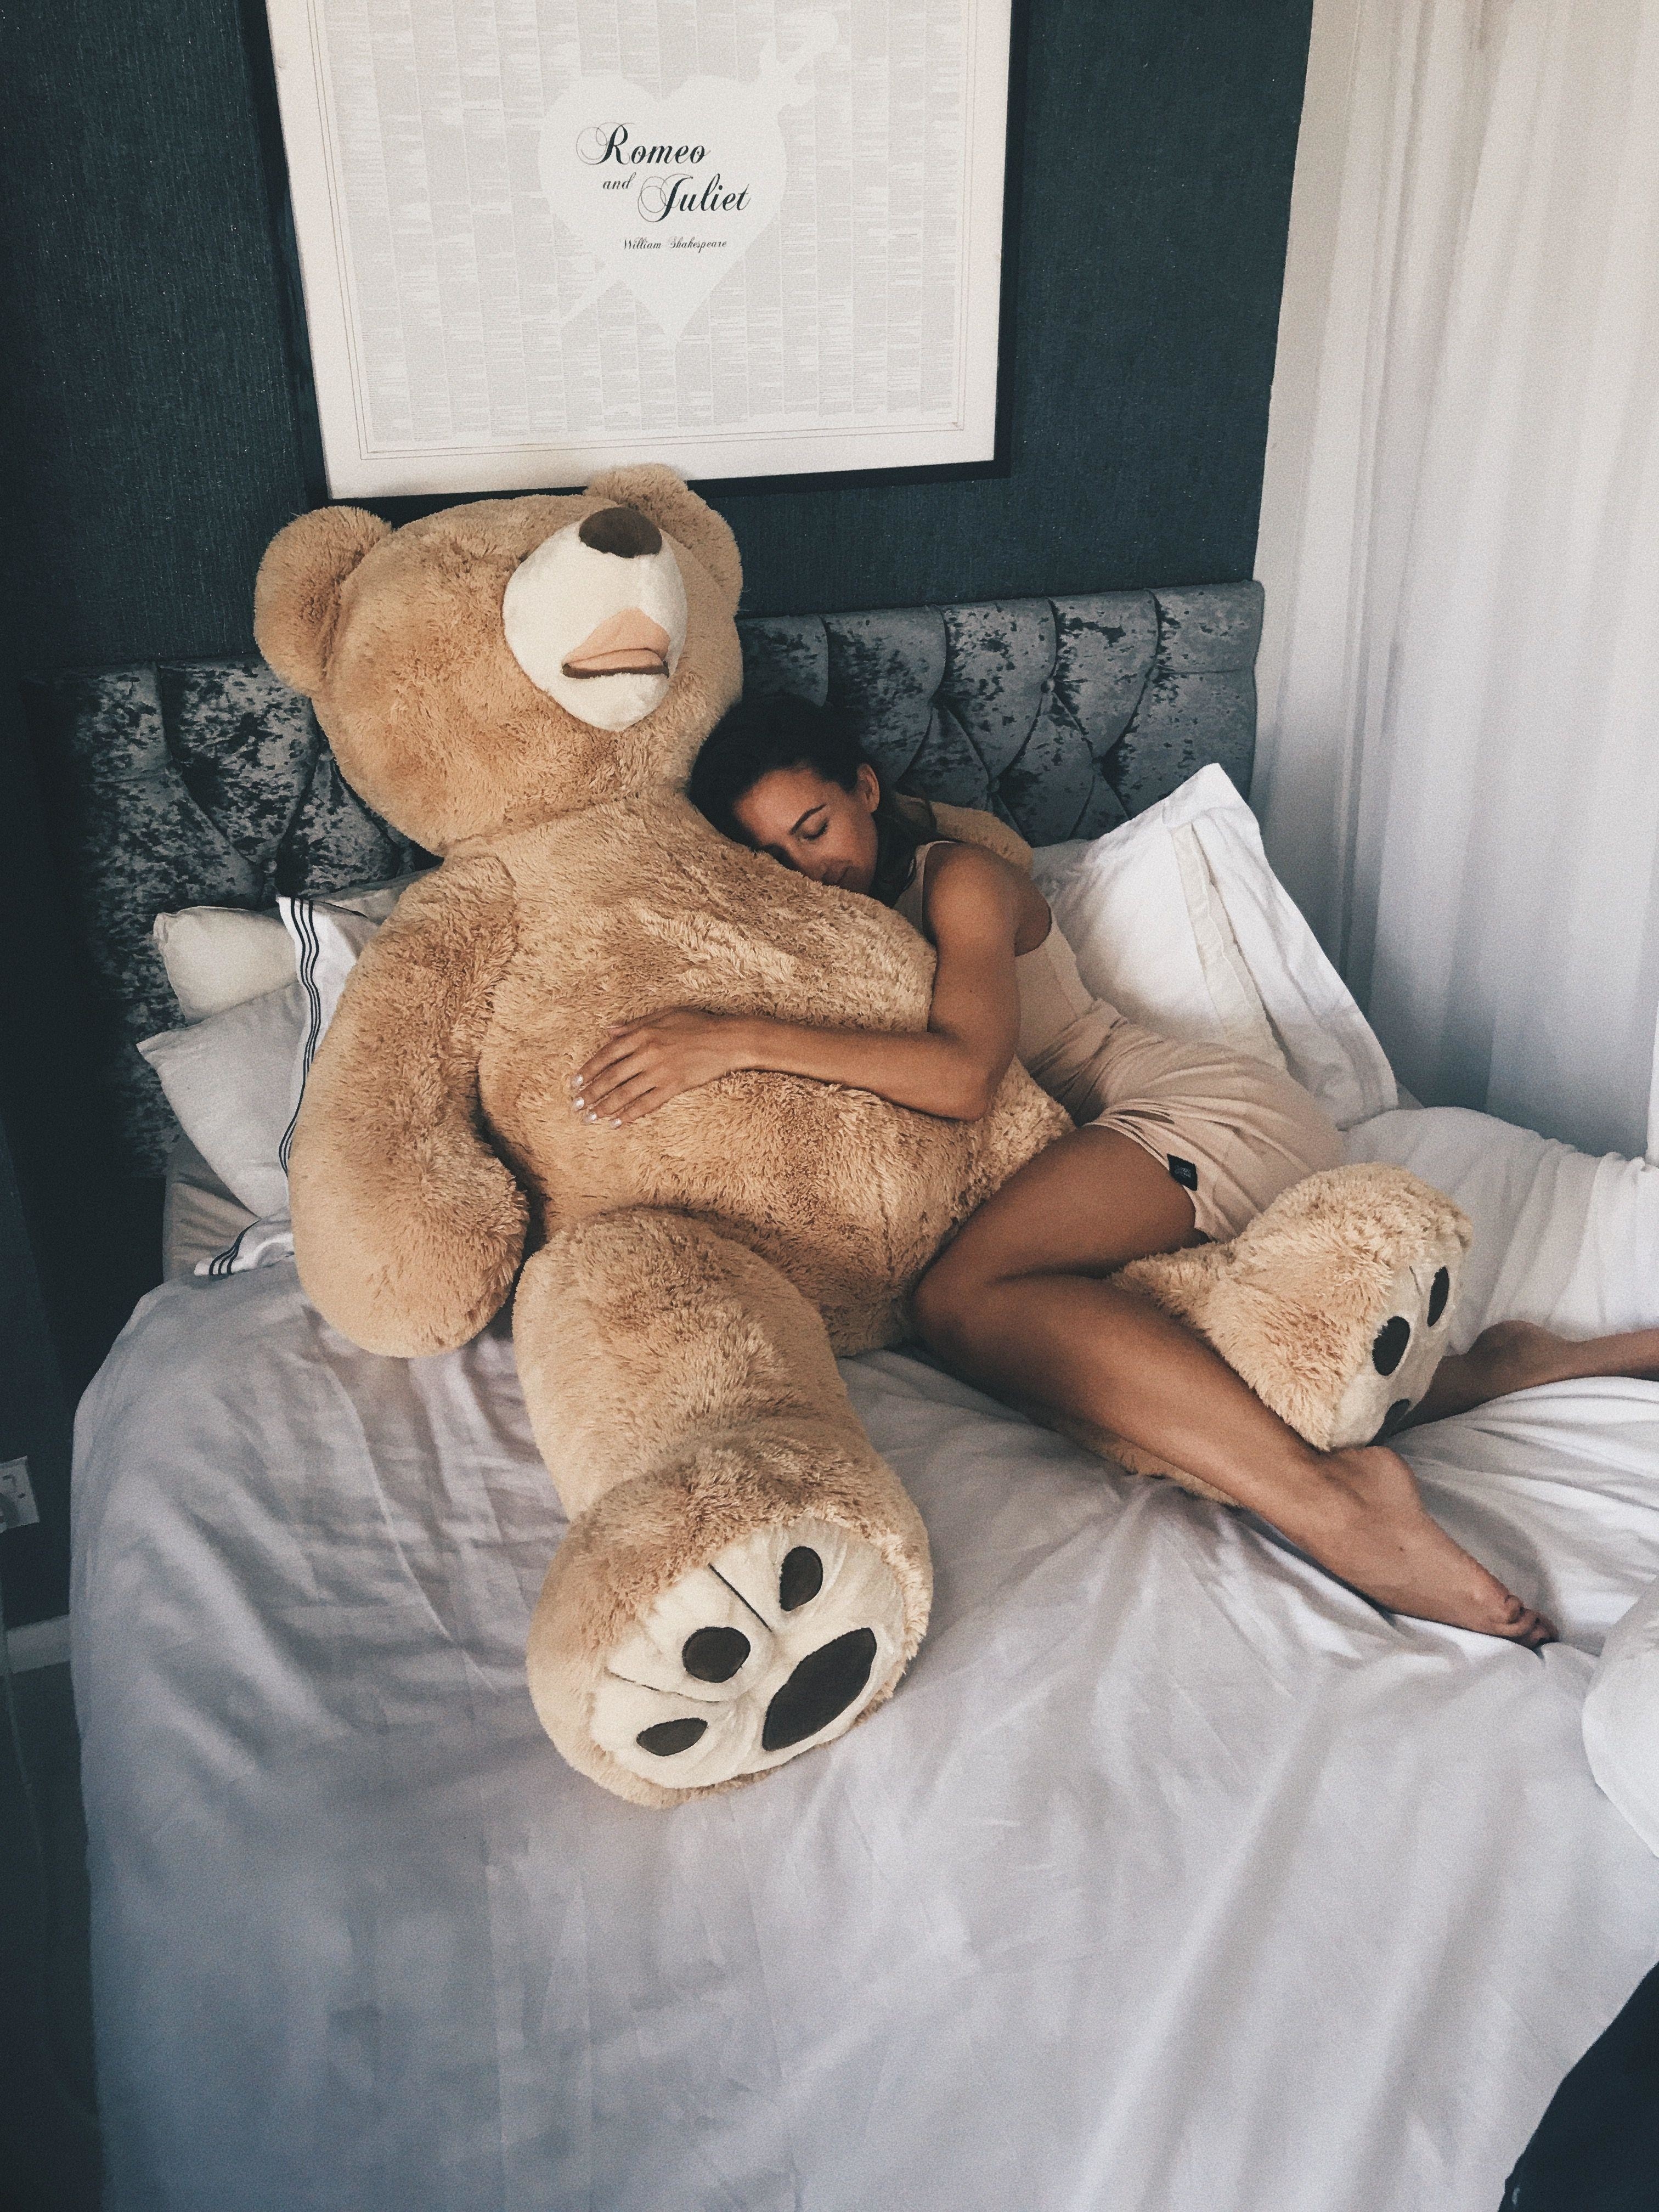 Bear Sex - Sex with a teddy bear guy - porn photo